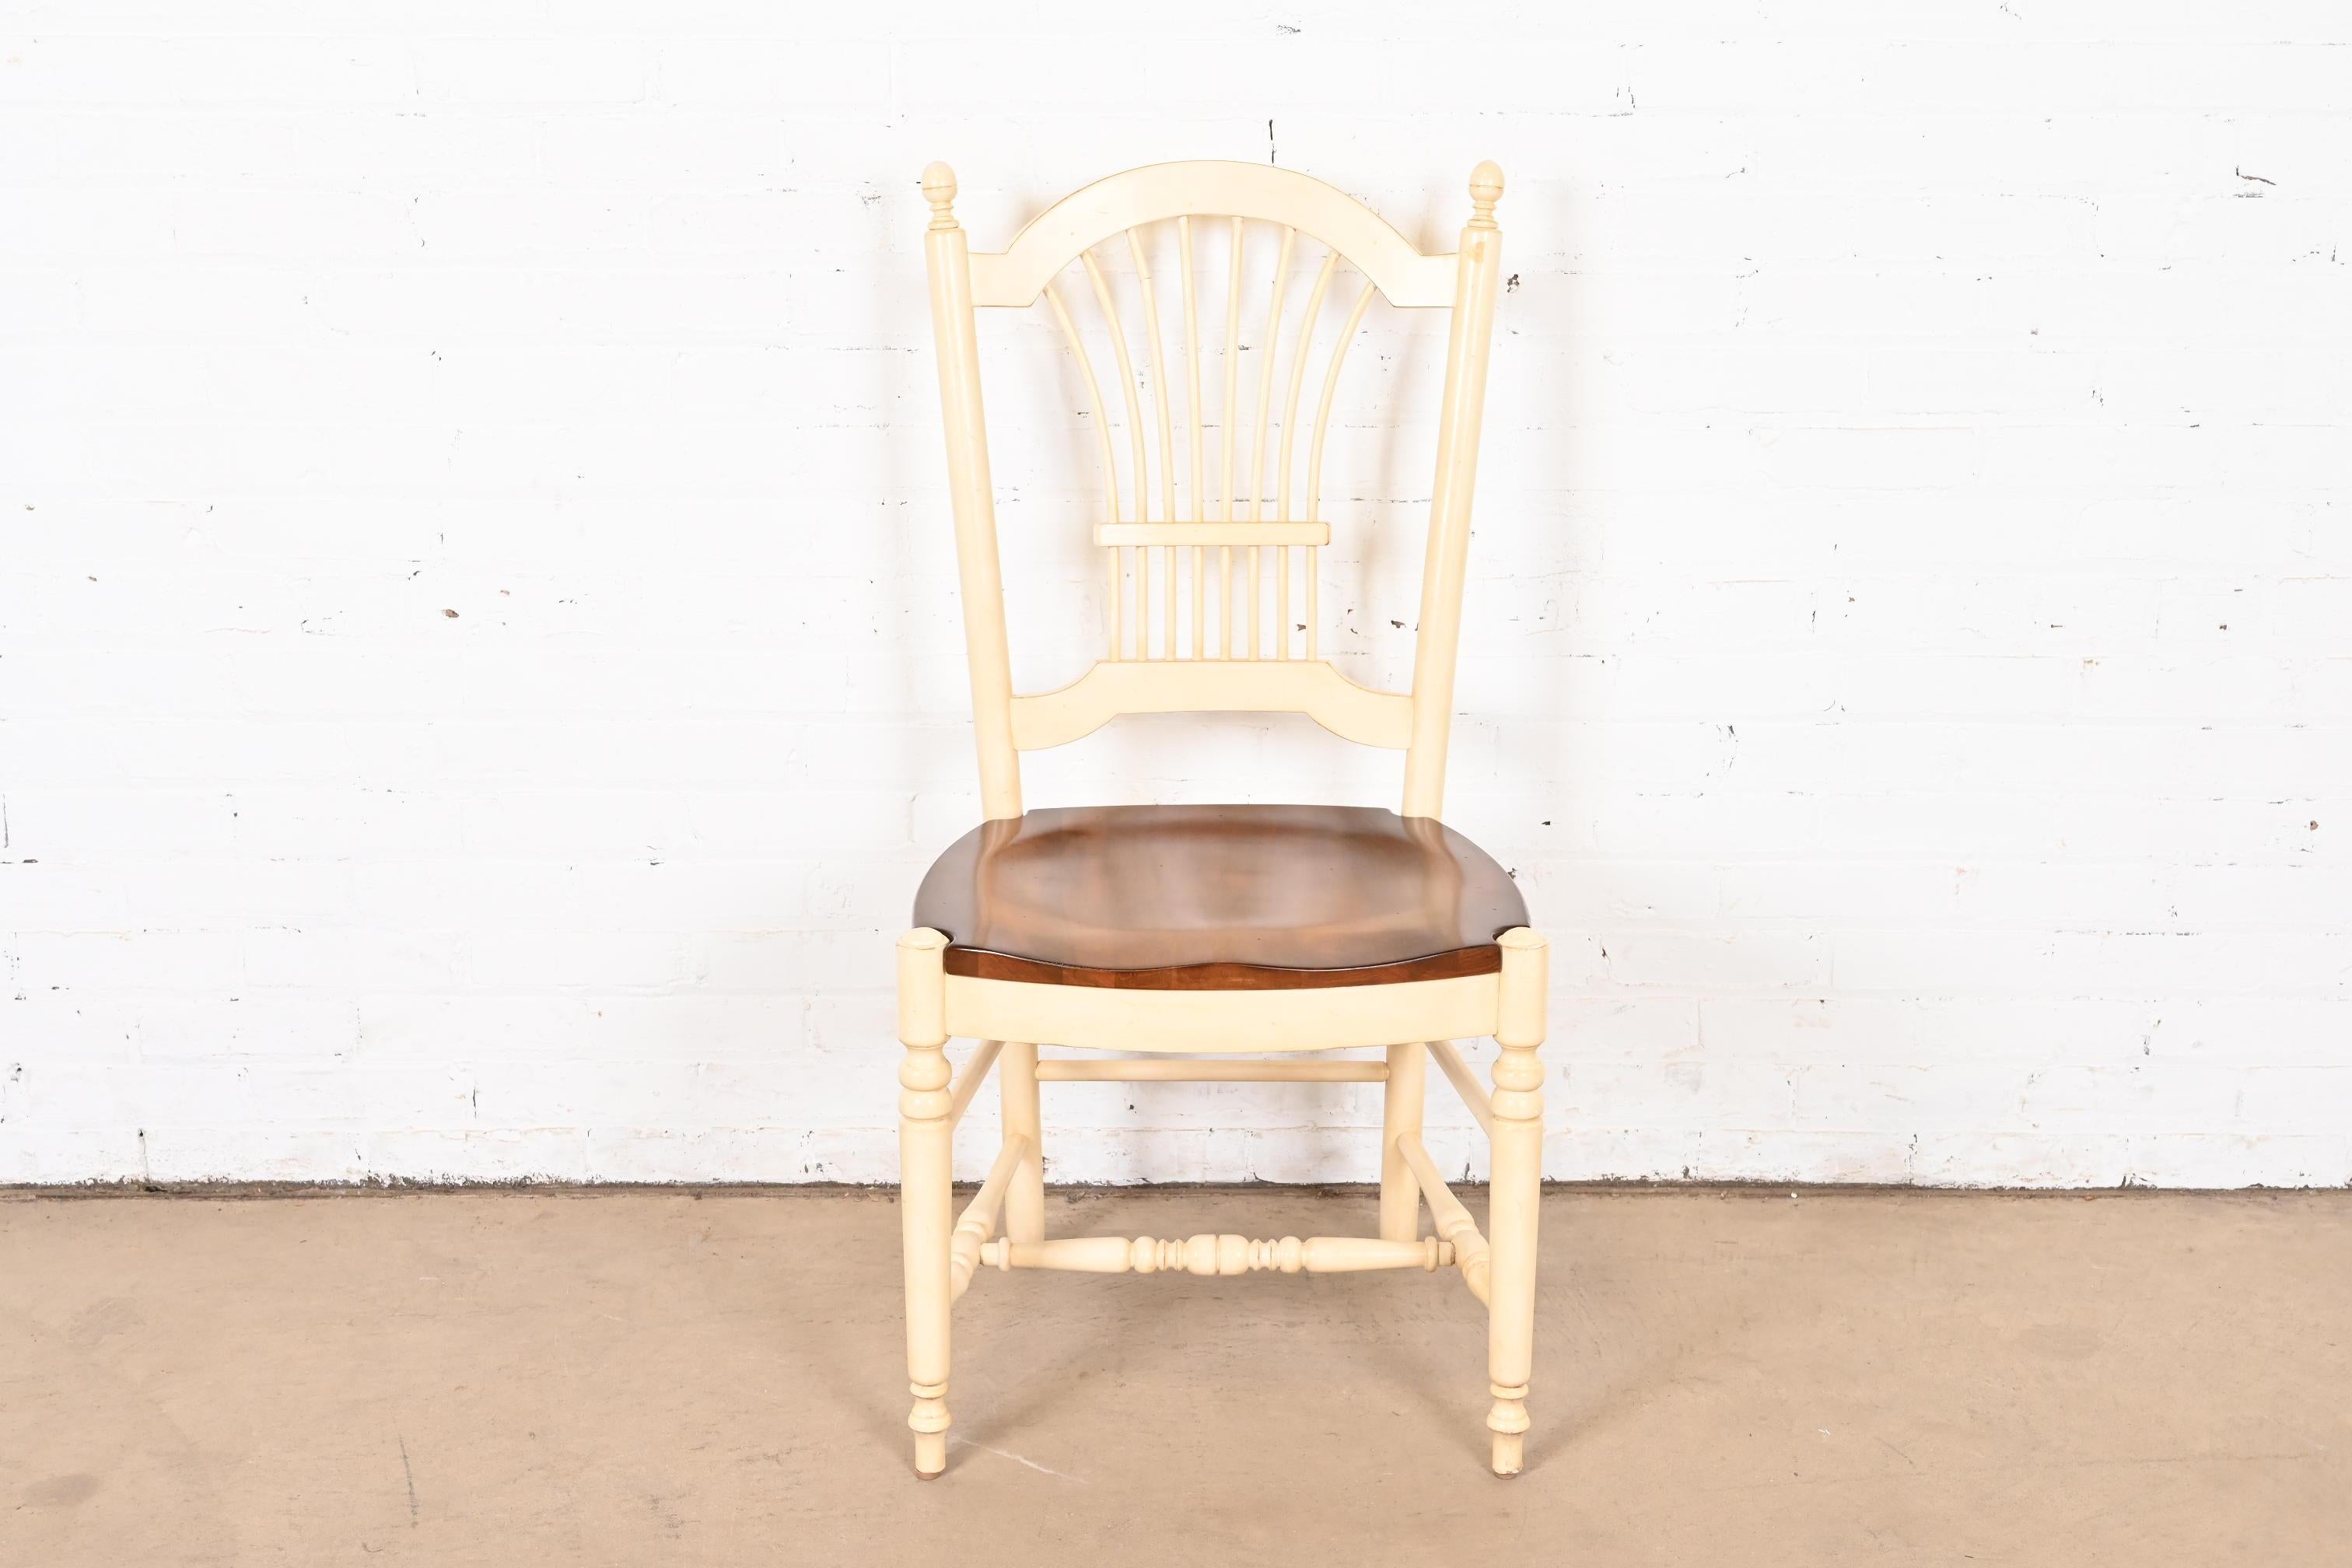 Une belle chaise de bureau ou d'appoint de style provincial ou campagnard français

USA, Circa 1990

Érable massif laqué blanc, avec assise en érable naturel.

Dimensions : 20 